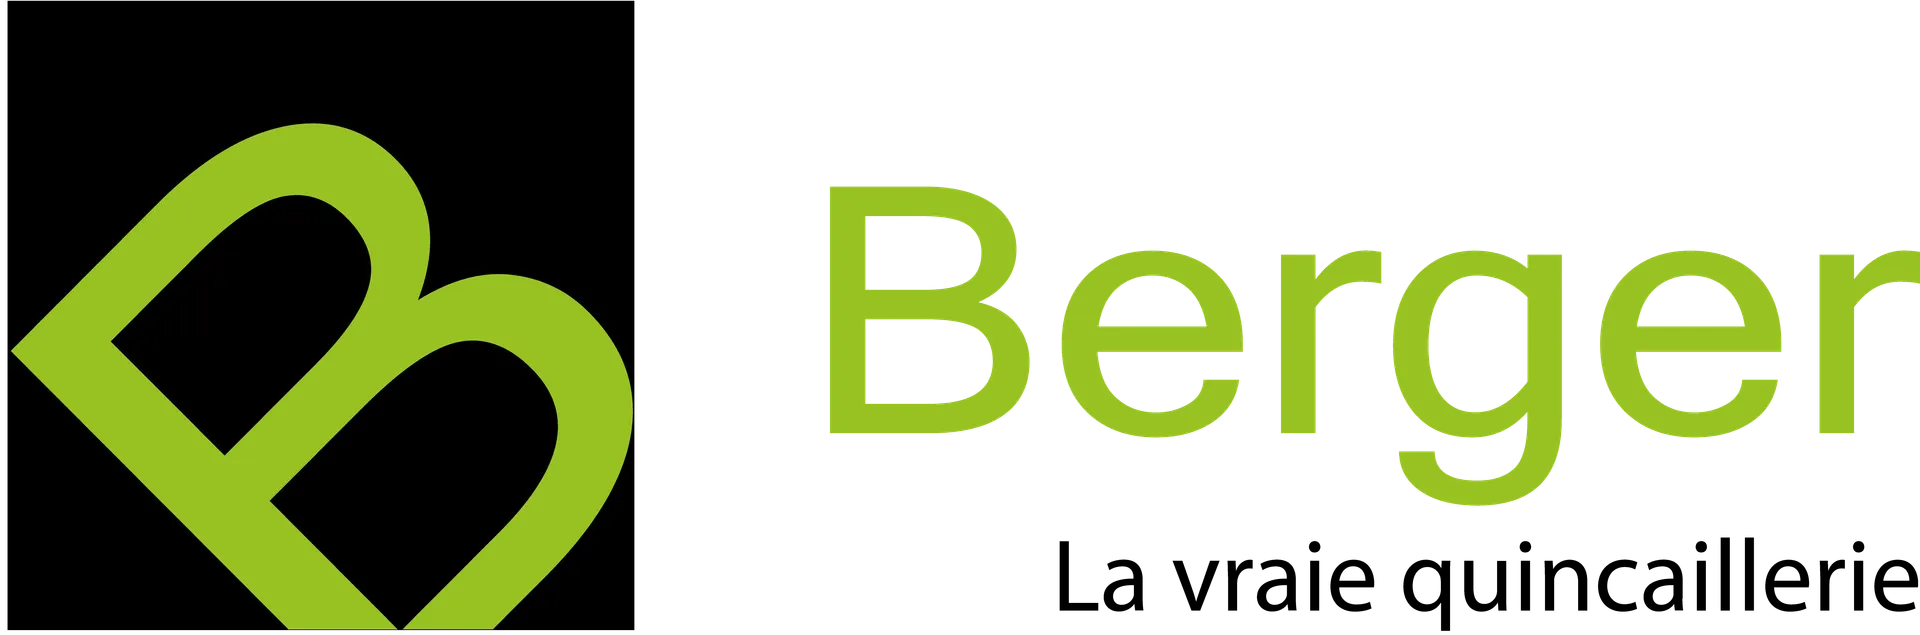 QUINCAILLERIE BERGER logo de circulaire